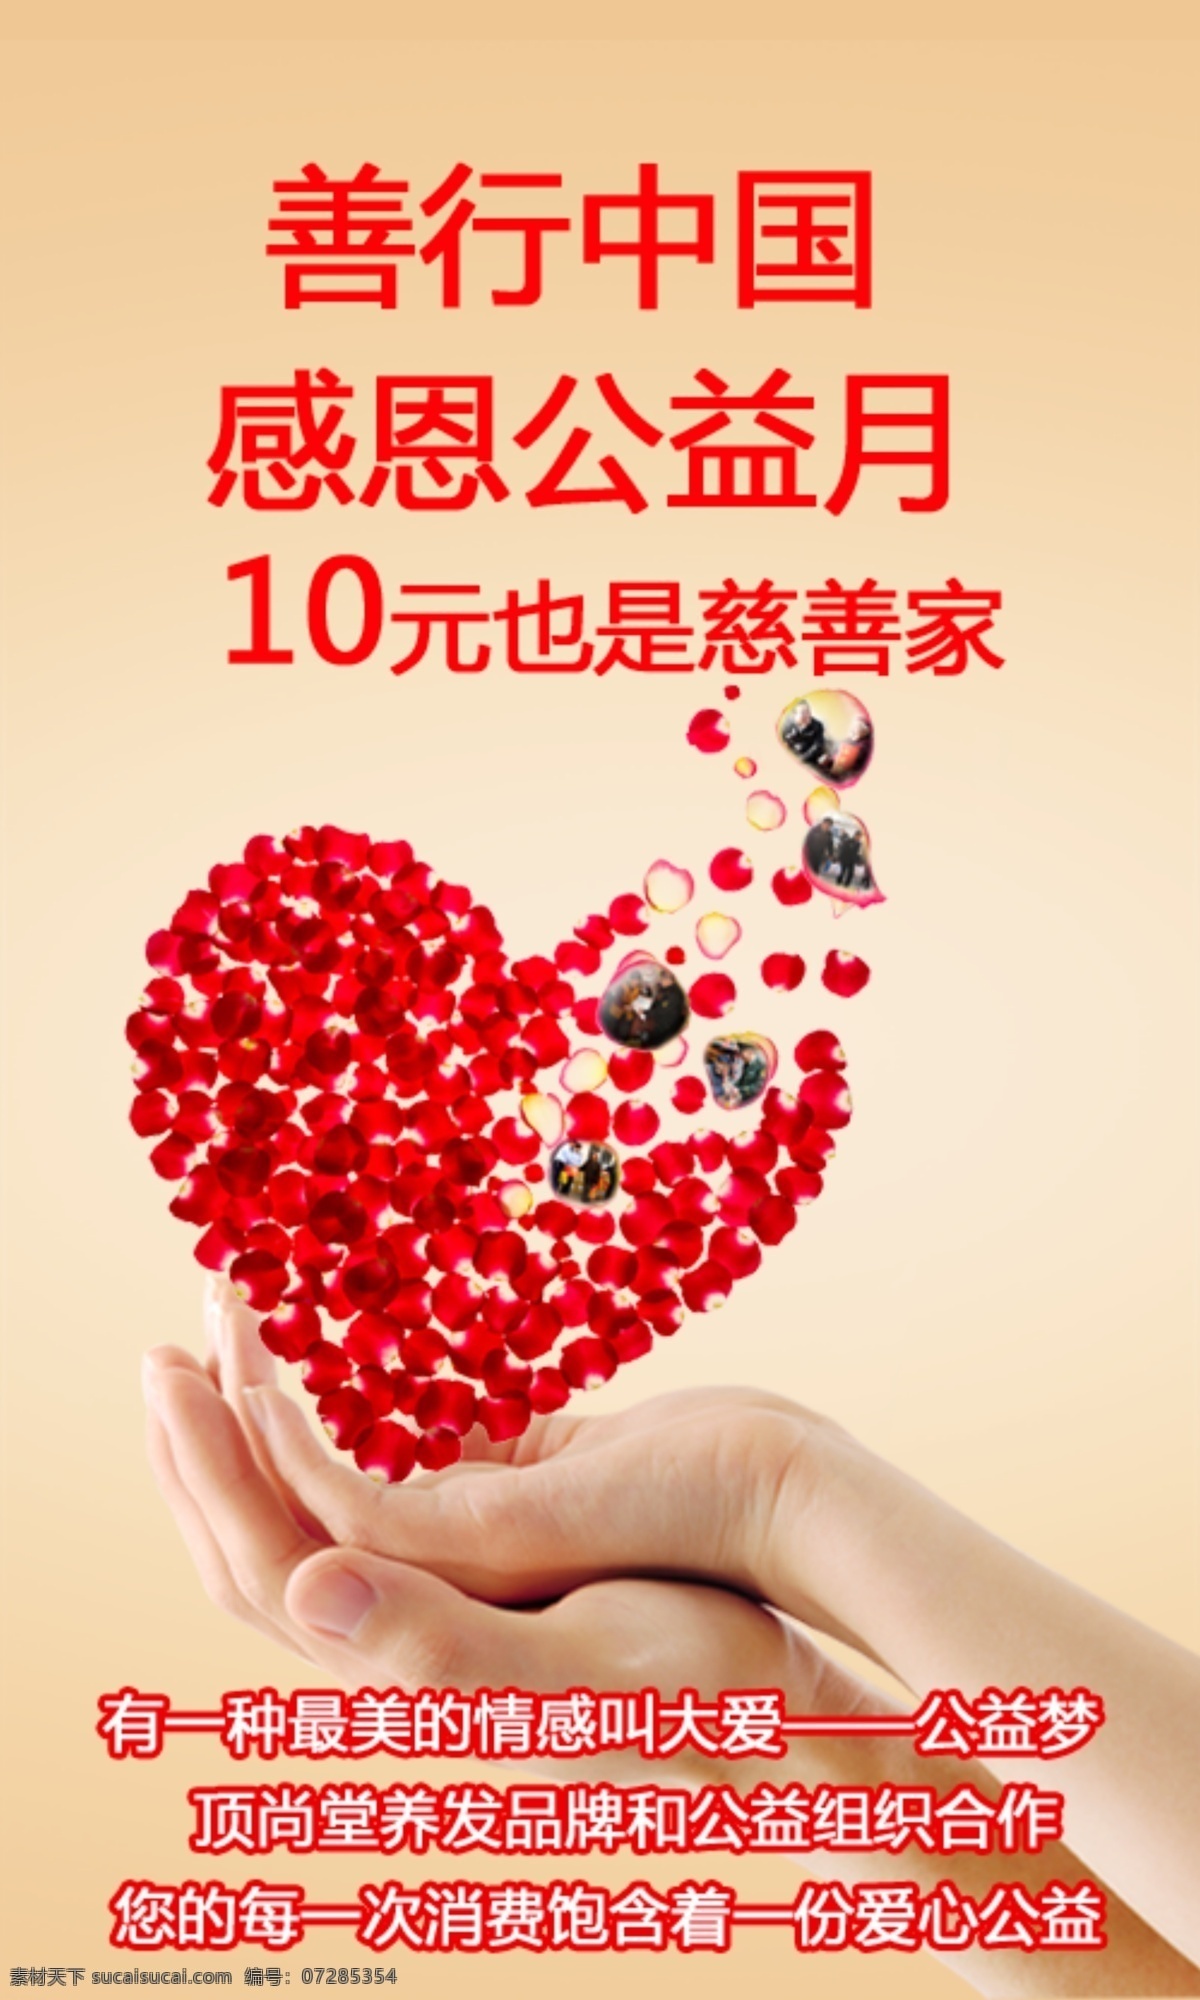 慈善海报 慈善 公益 中国 大爱 消费